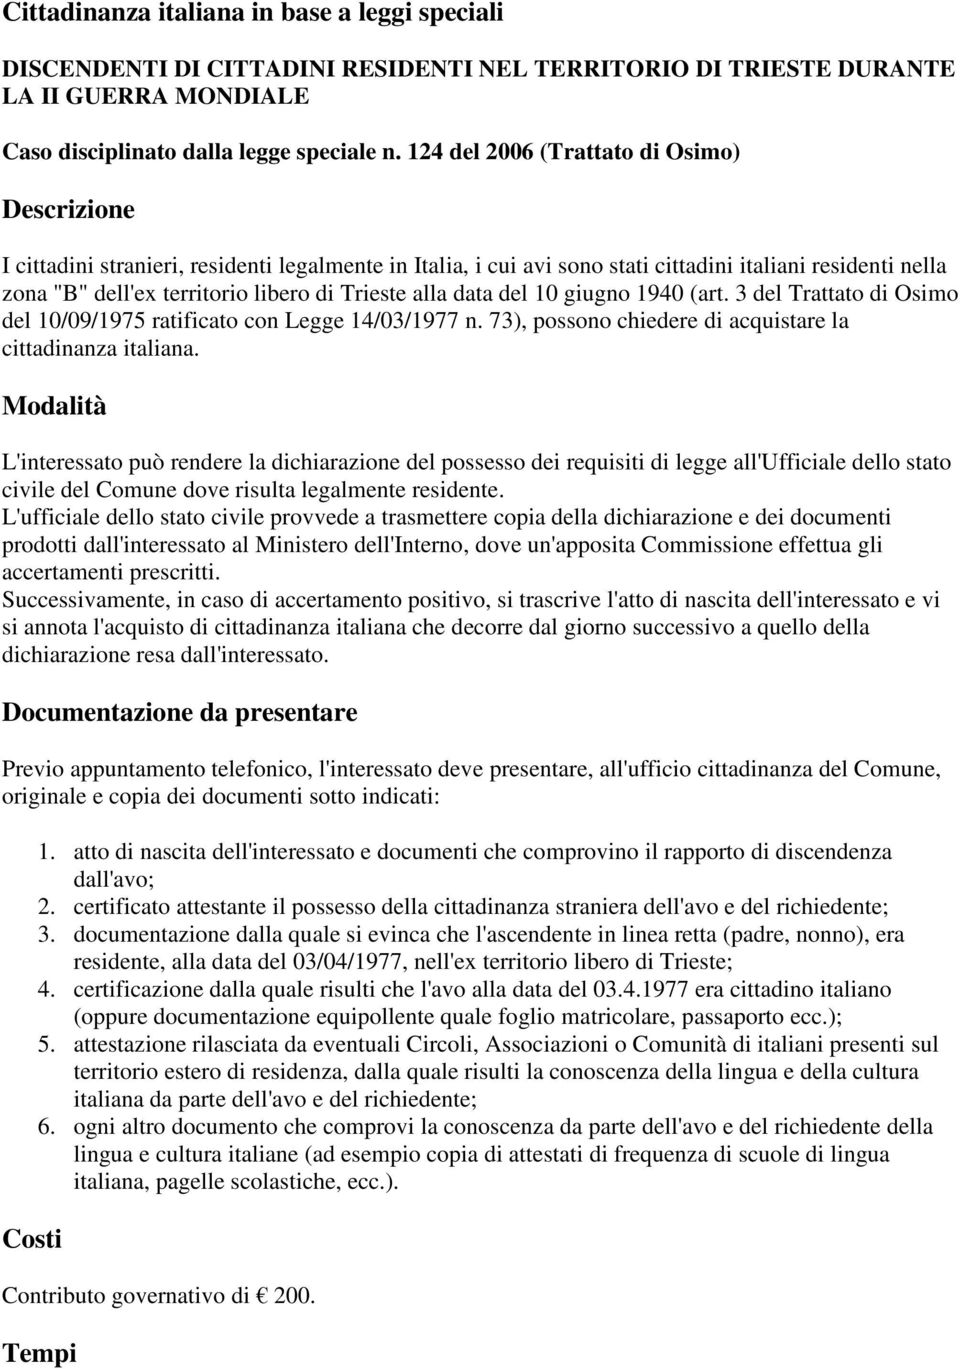 Trieste alla data del 10 giugno 1940 (art. 3 del Trattato di Osimo del 10/09/1975 ratificato con Legge 14/03/1977 n. 73), possono chiedere di acquistare la cittadinanza italiana.